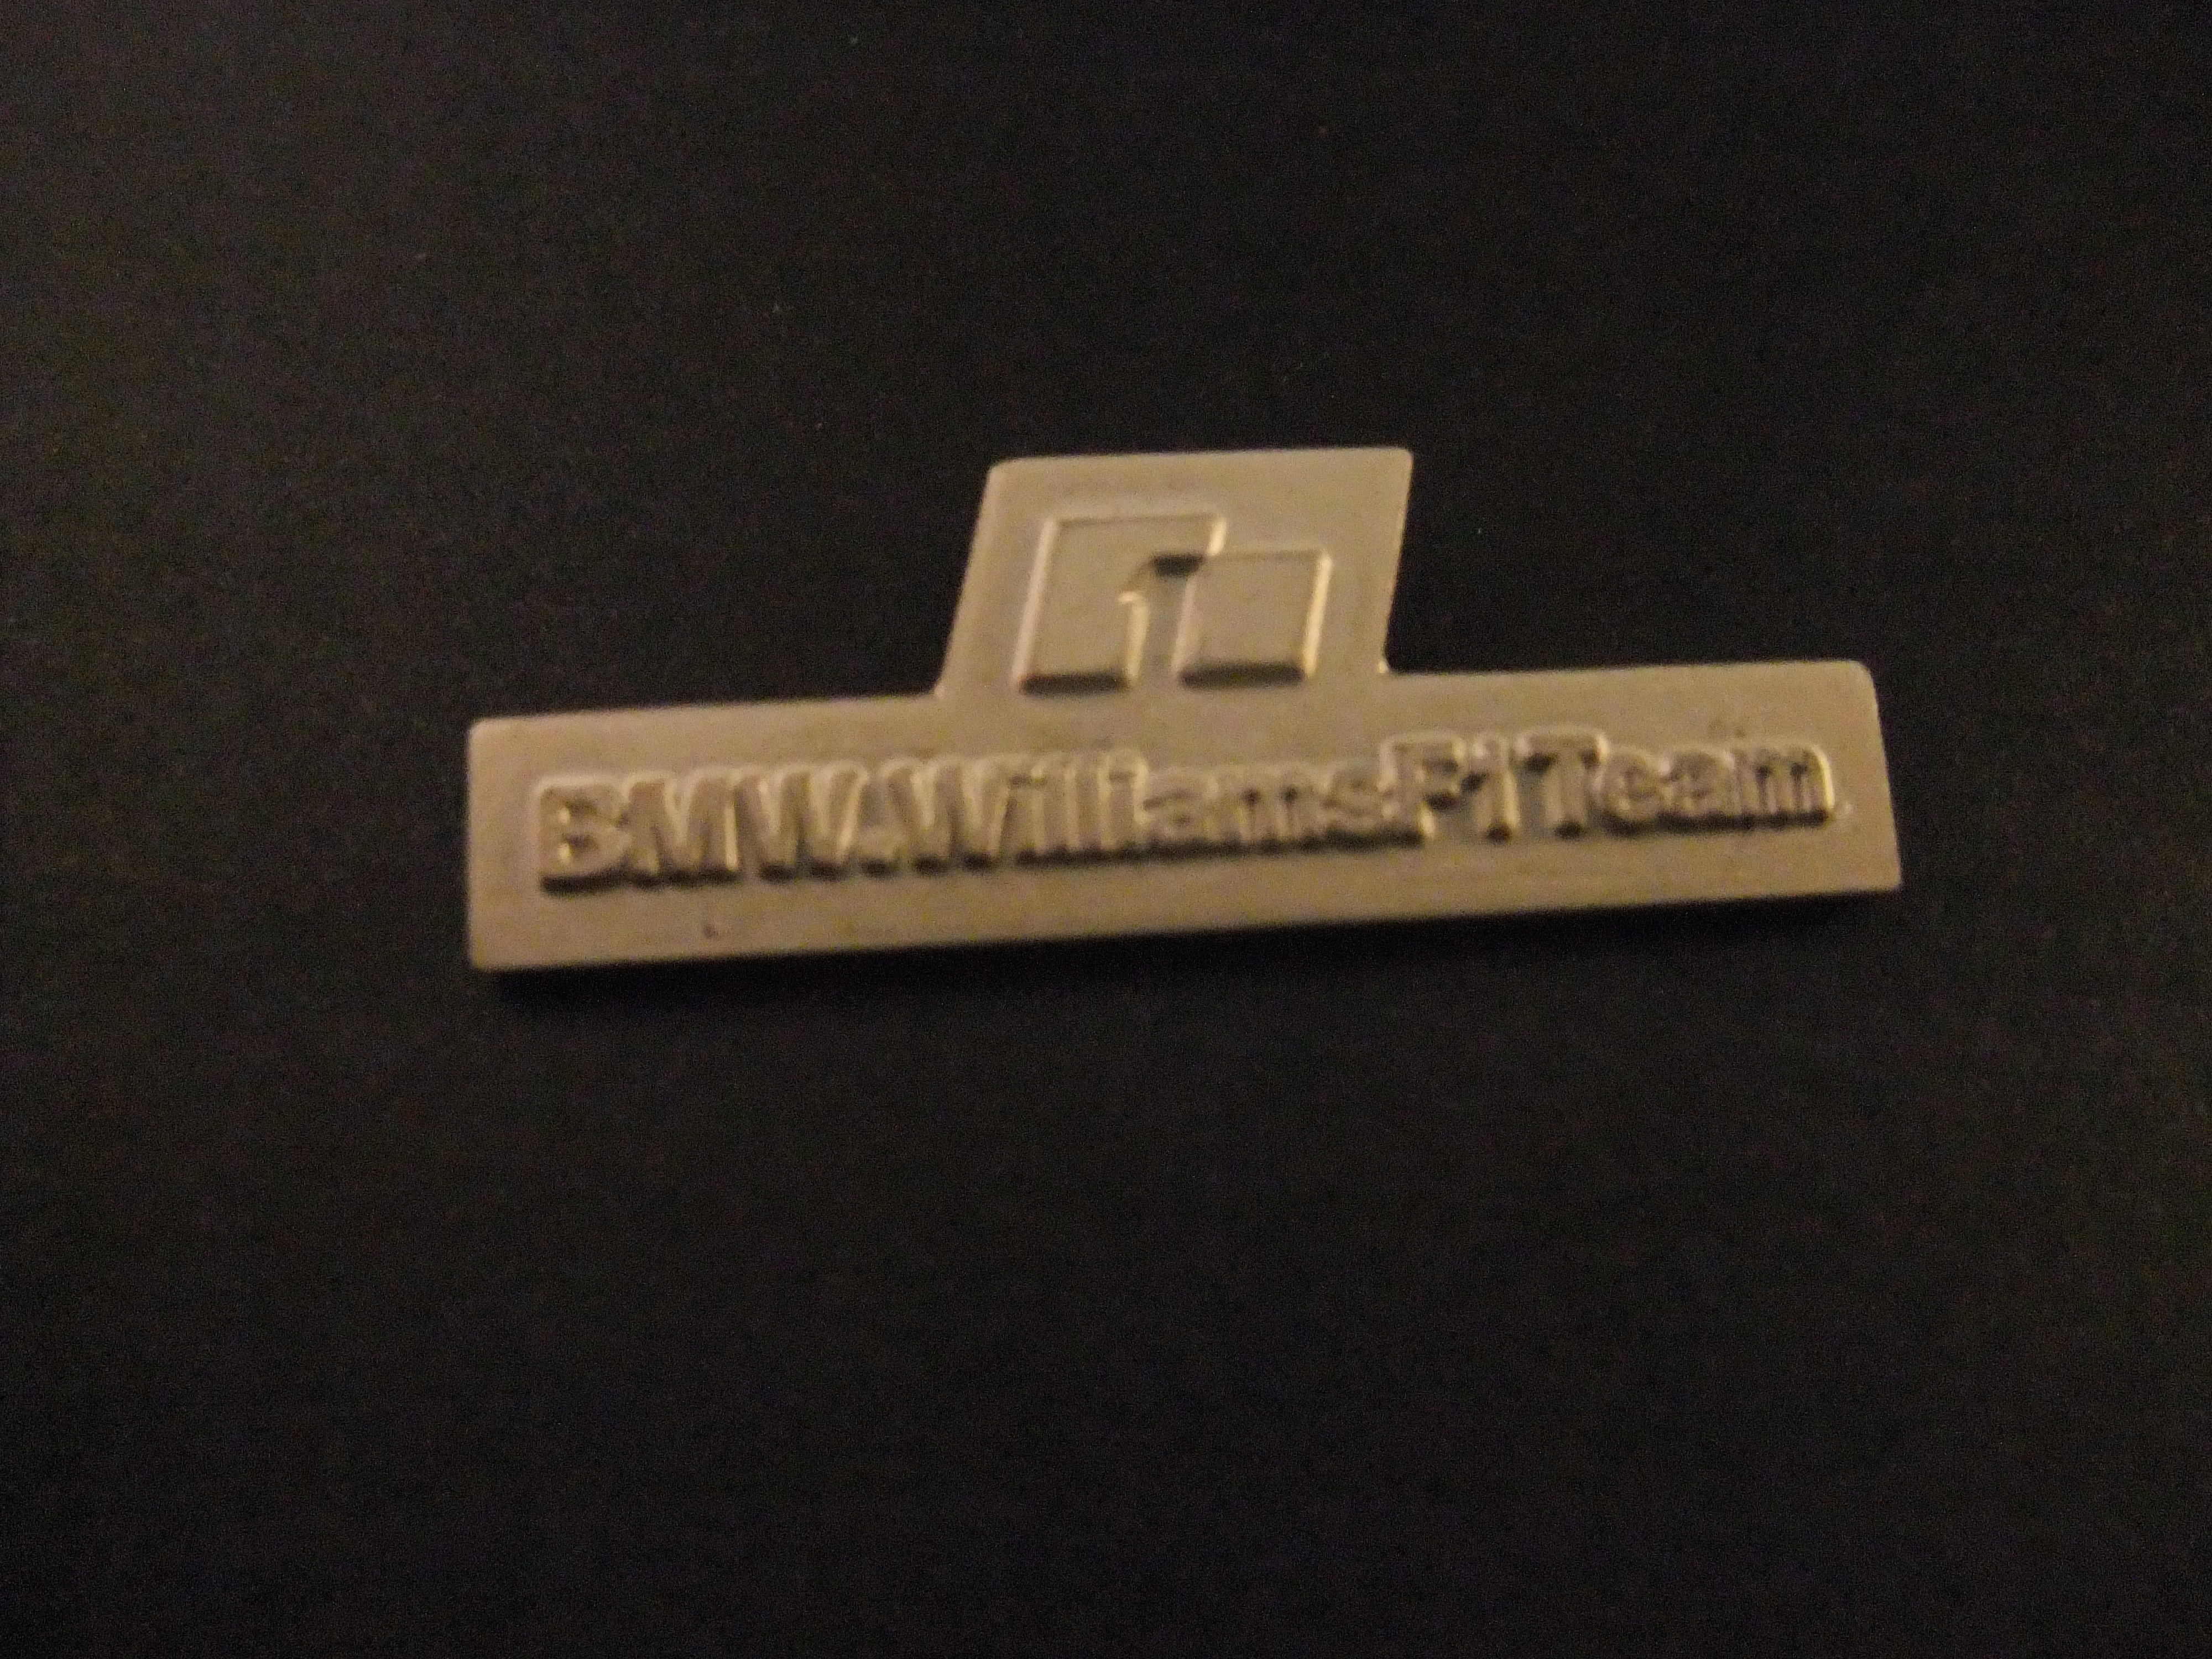 BMW Williams F1 team(2000-2005) zilverkleurig logo